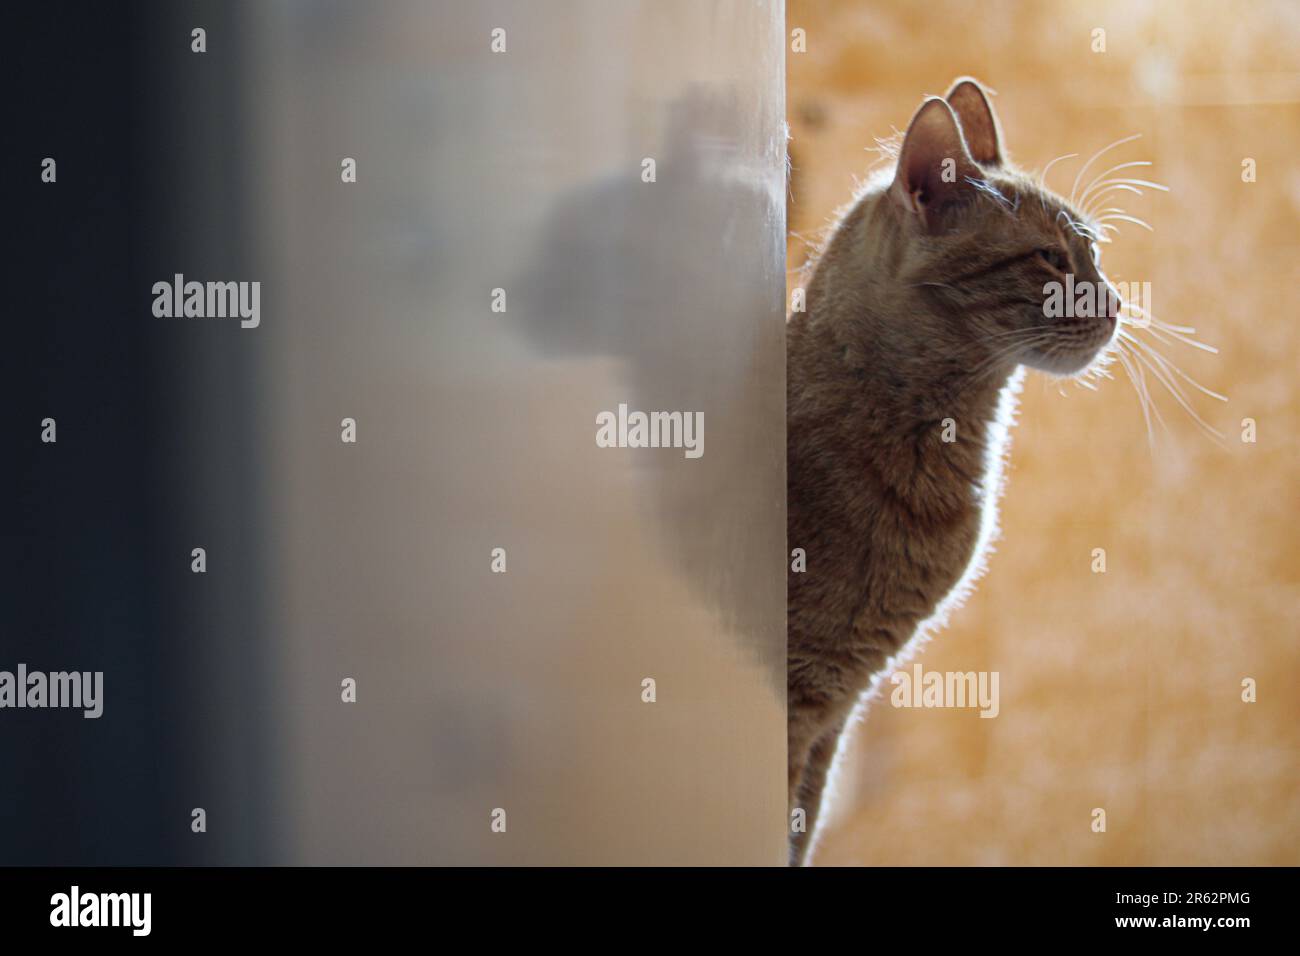 Un gatto peering intorno all'angolo di un muro, guardando curioso e allerta Foto Stock